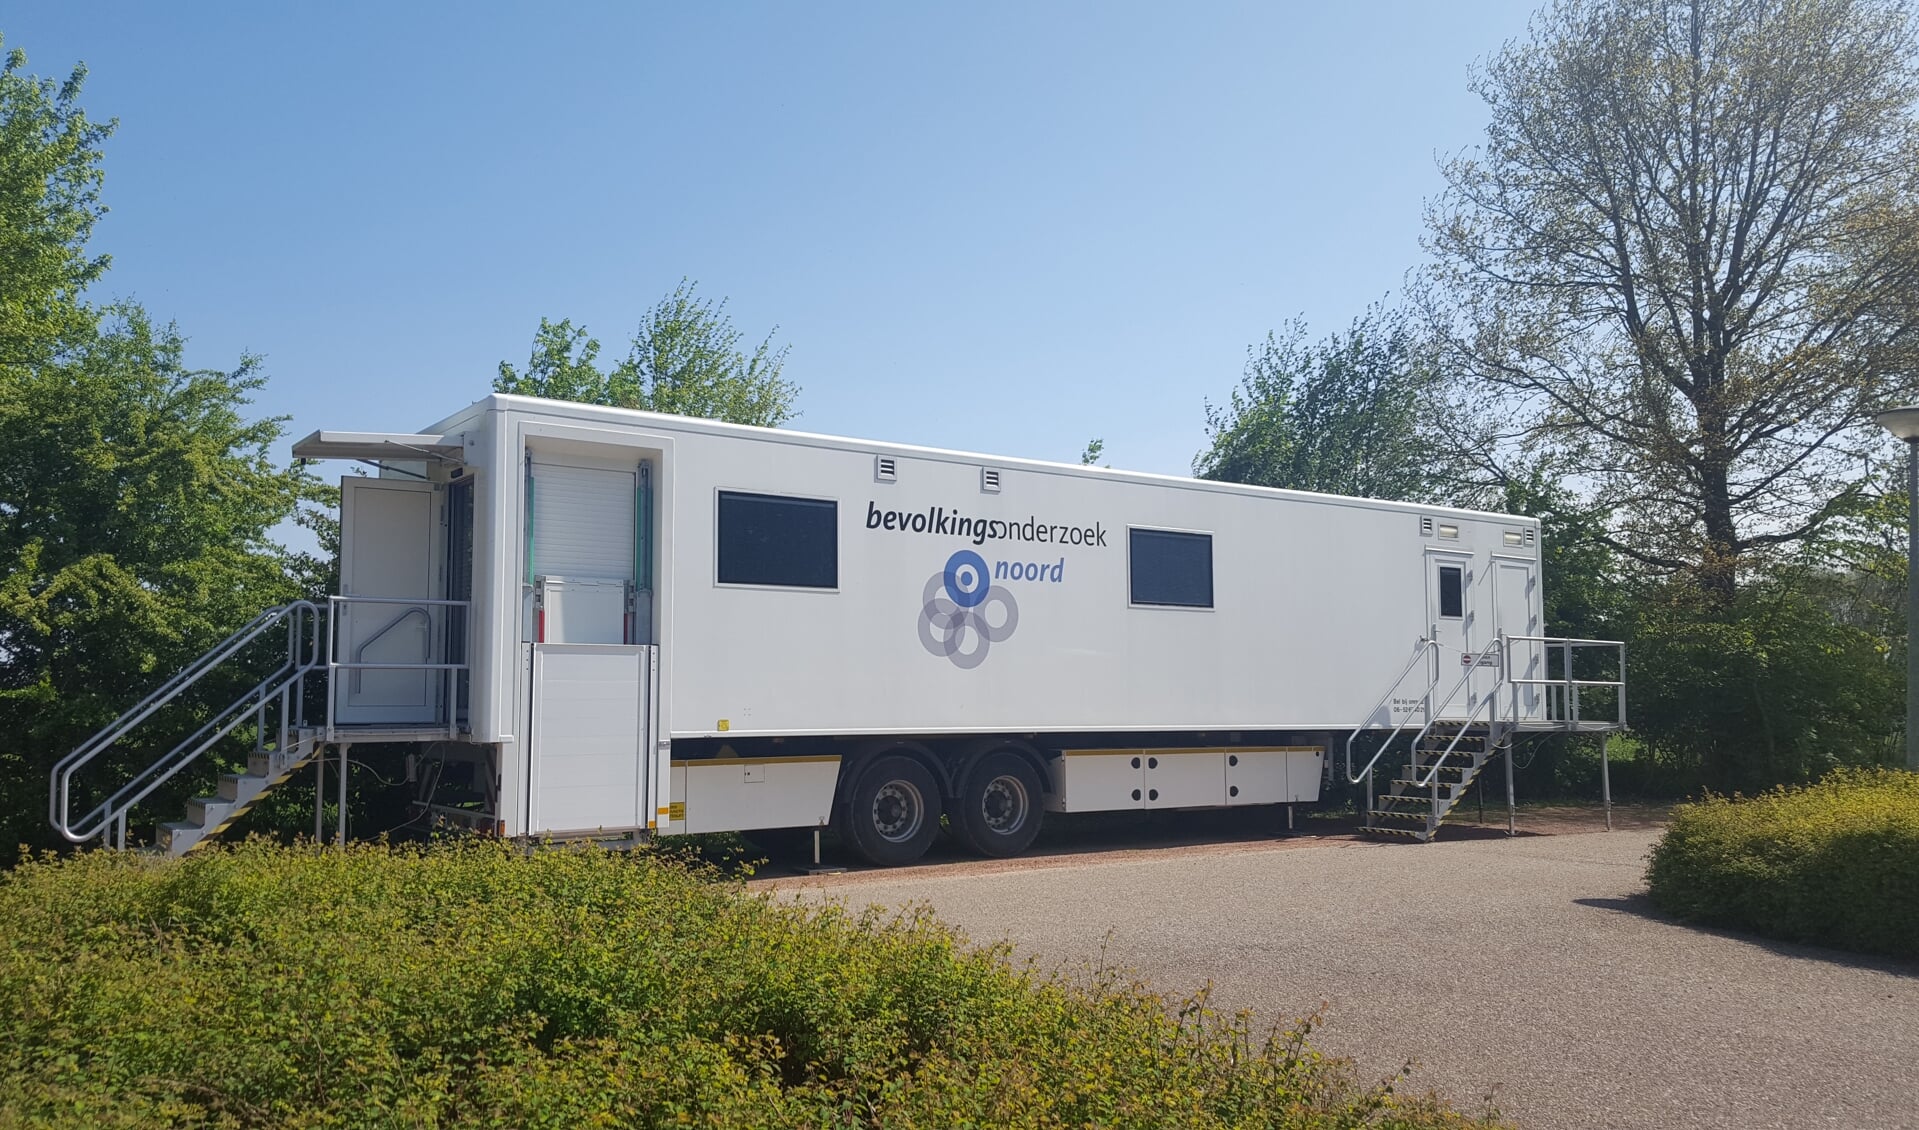 De onderzoekwagen staat de komende weken bij de sporthal in Annen. (foto: Bevolkingsonderzoek Noord)